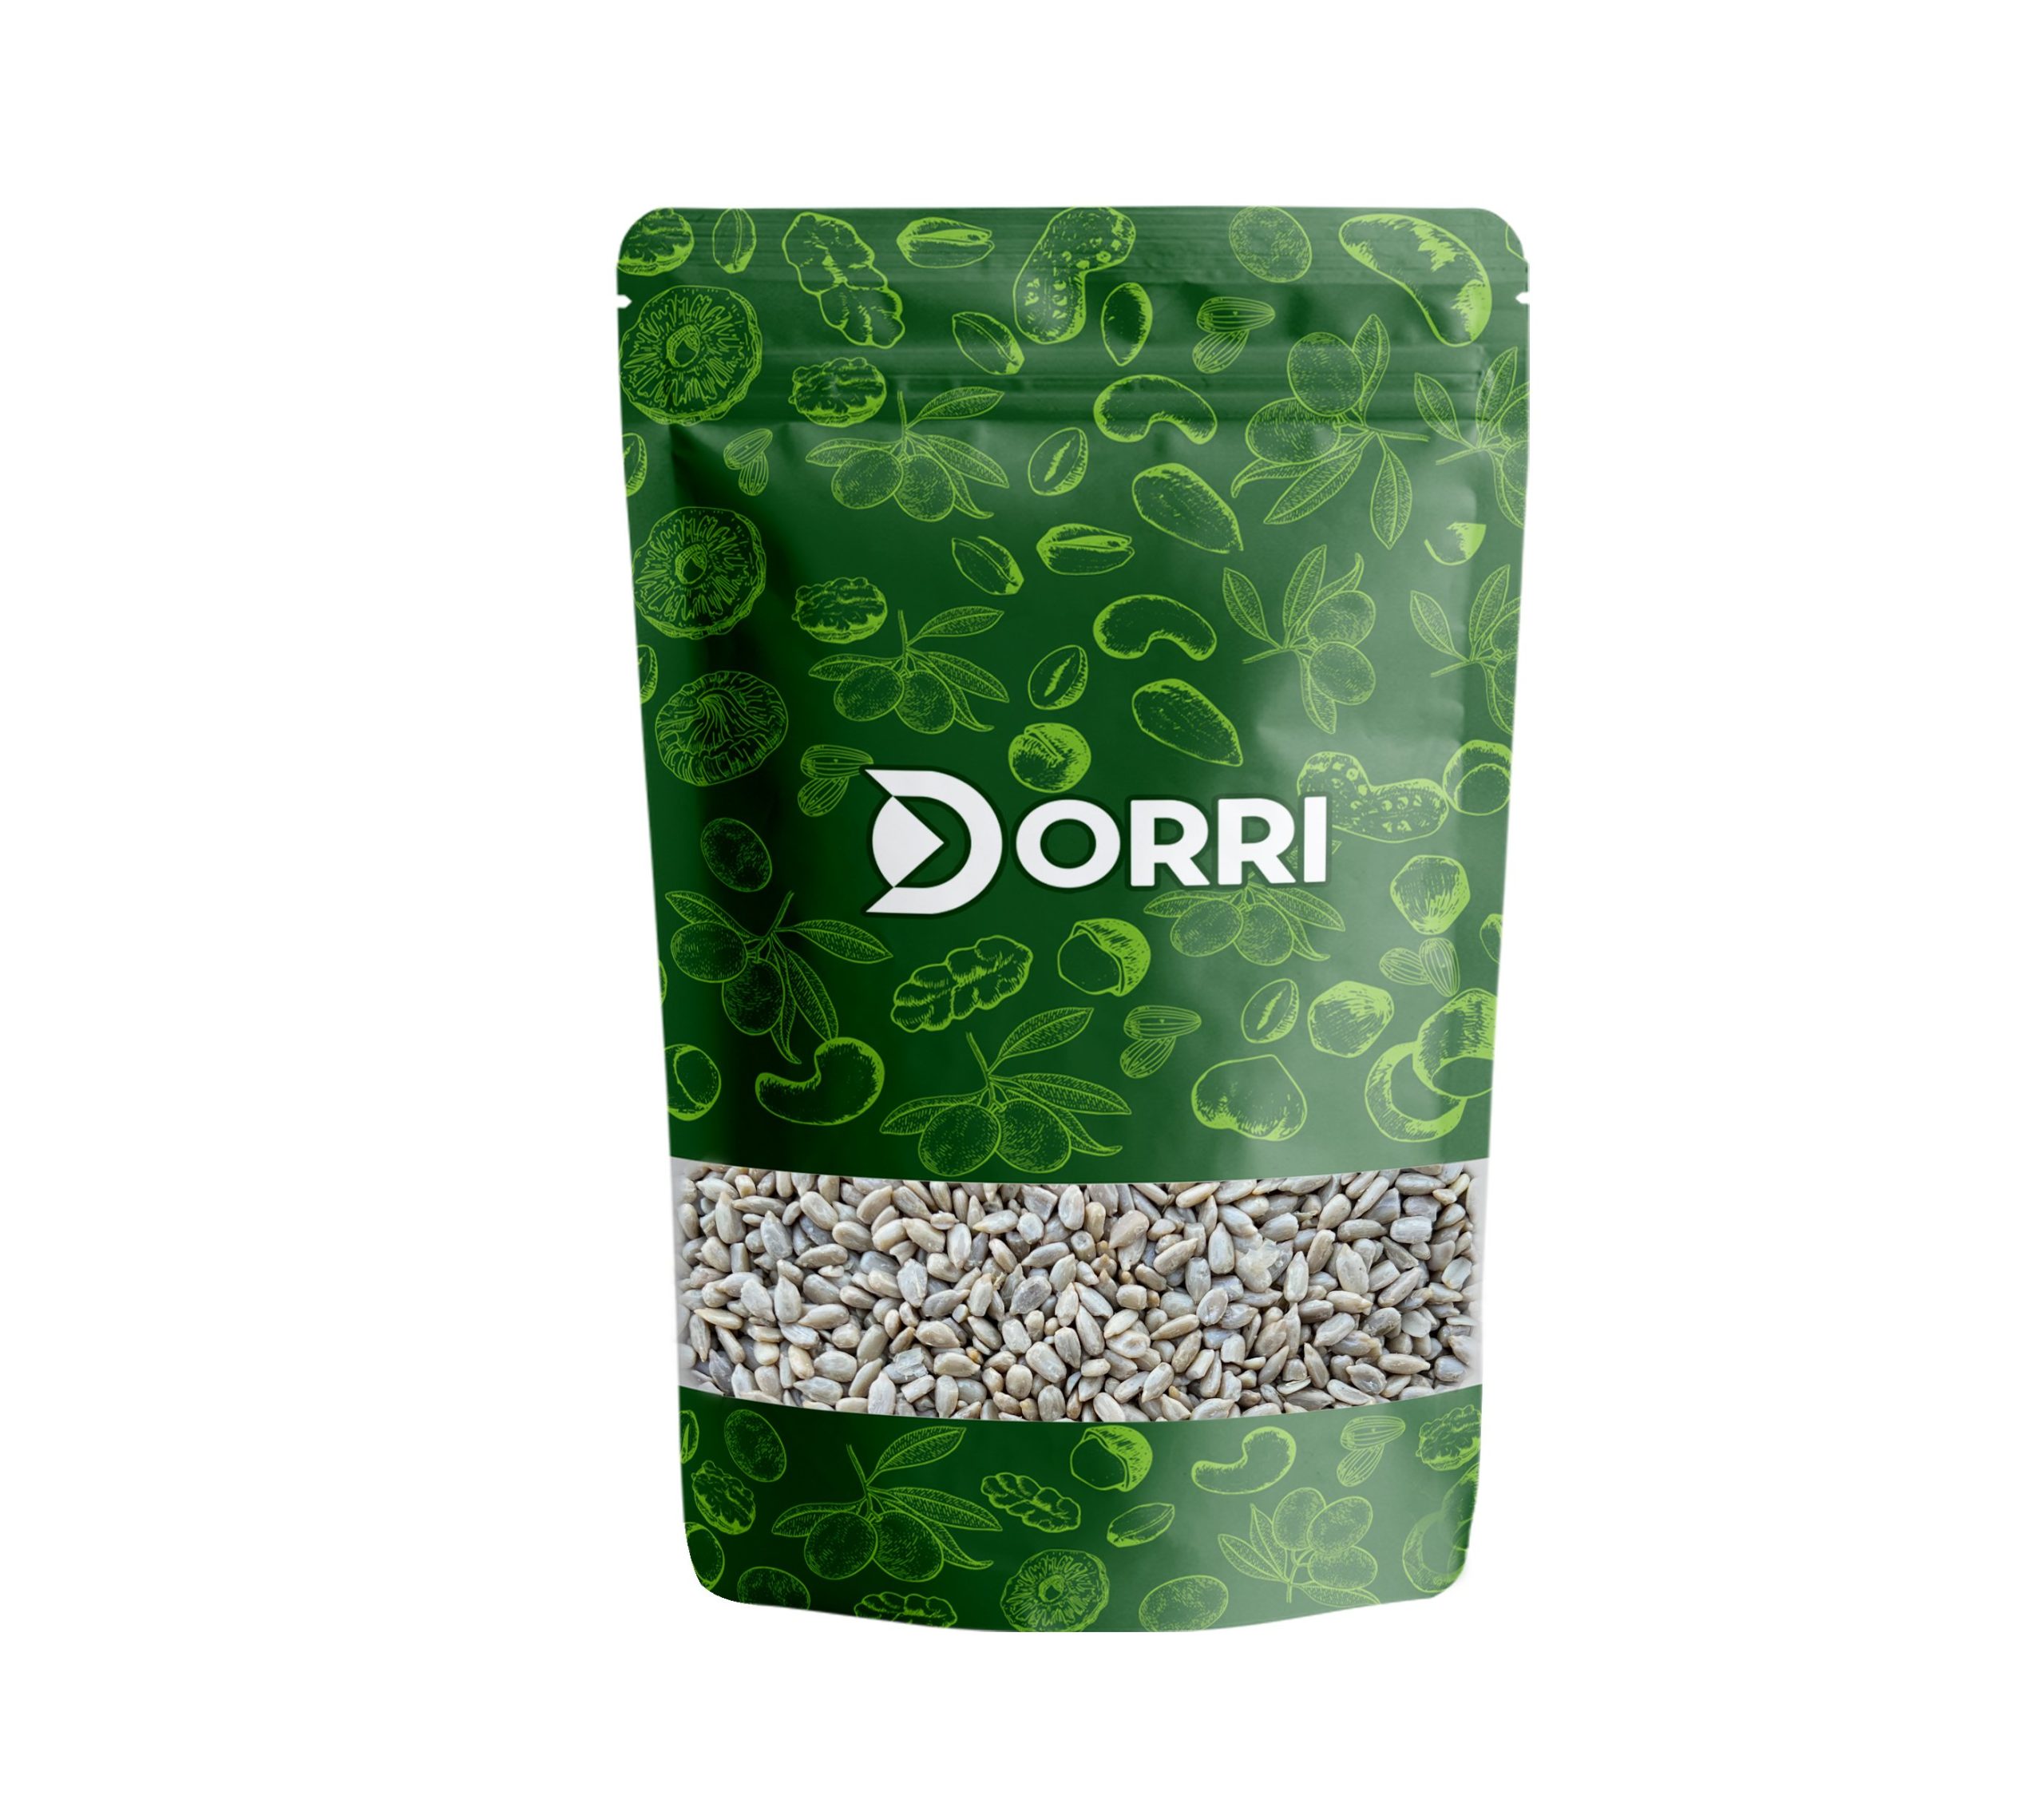 Dorri - Sunflower Seeds